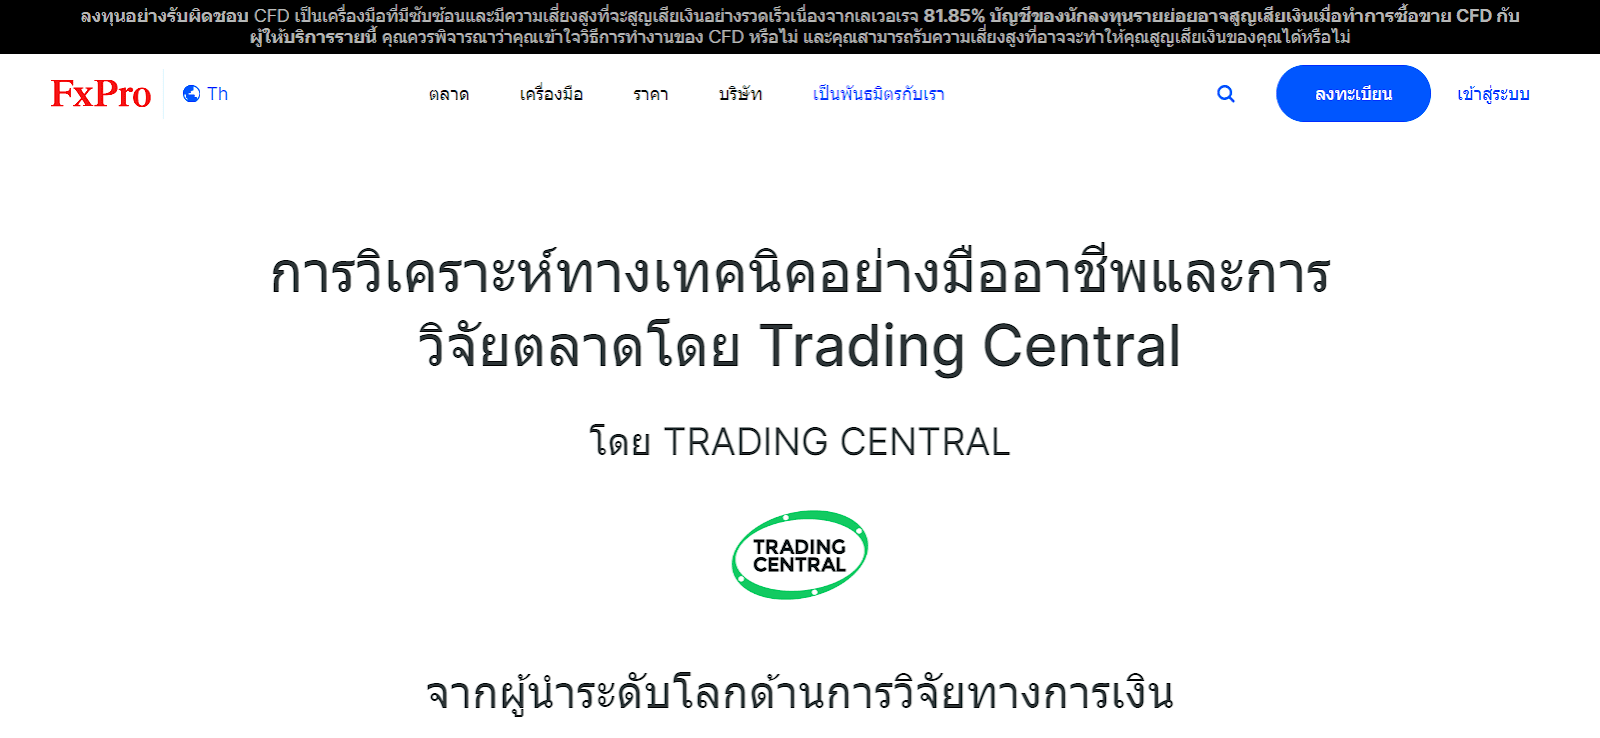 เครื่องมือที่มีประโยชน์ของ FxPro - ส่วนการวิเคราะห์ Trading Central